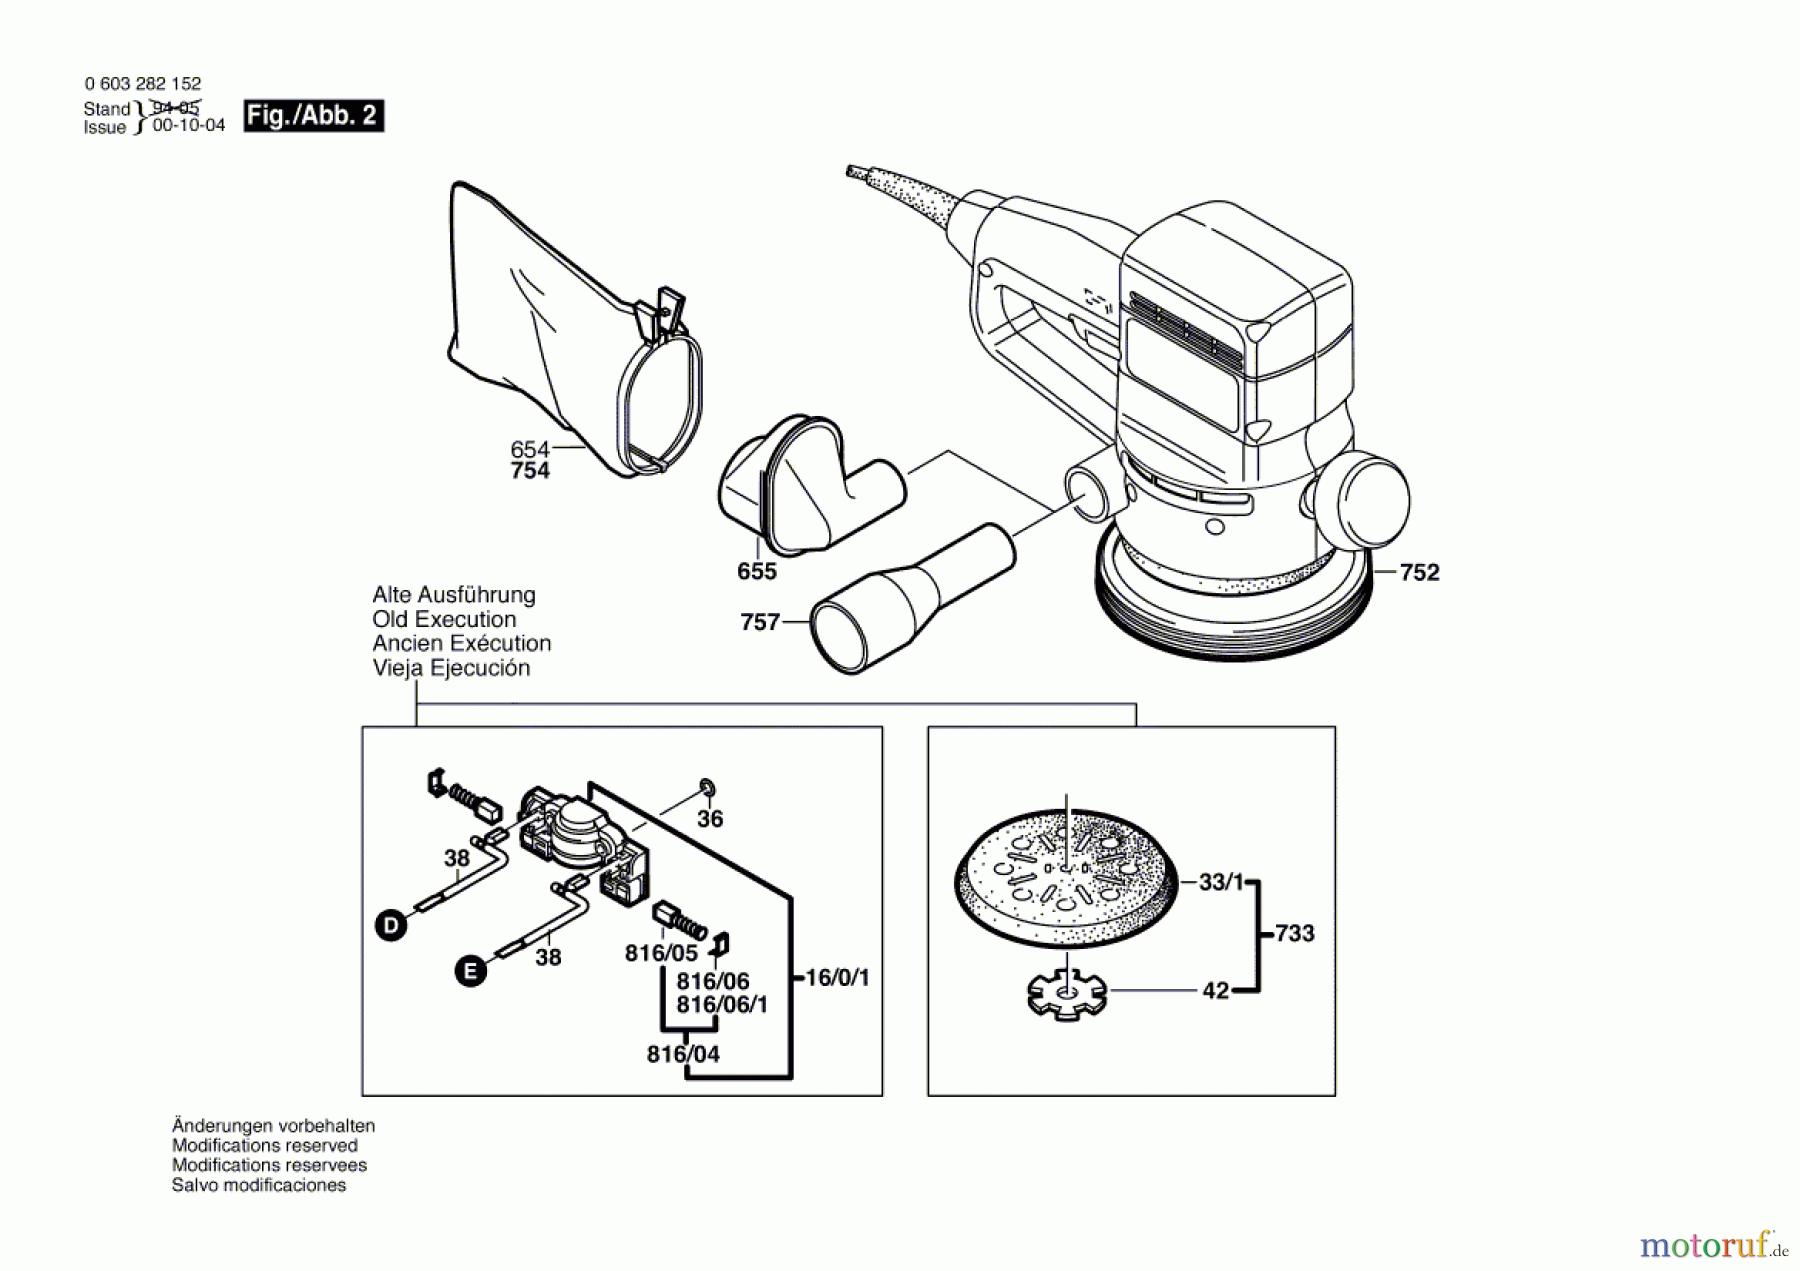  Bosch Werkzeug Exzenterschleifer PEX 115 A-1 Seite 2